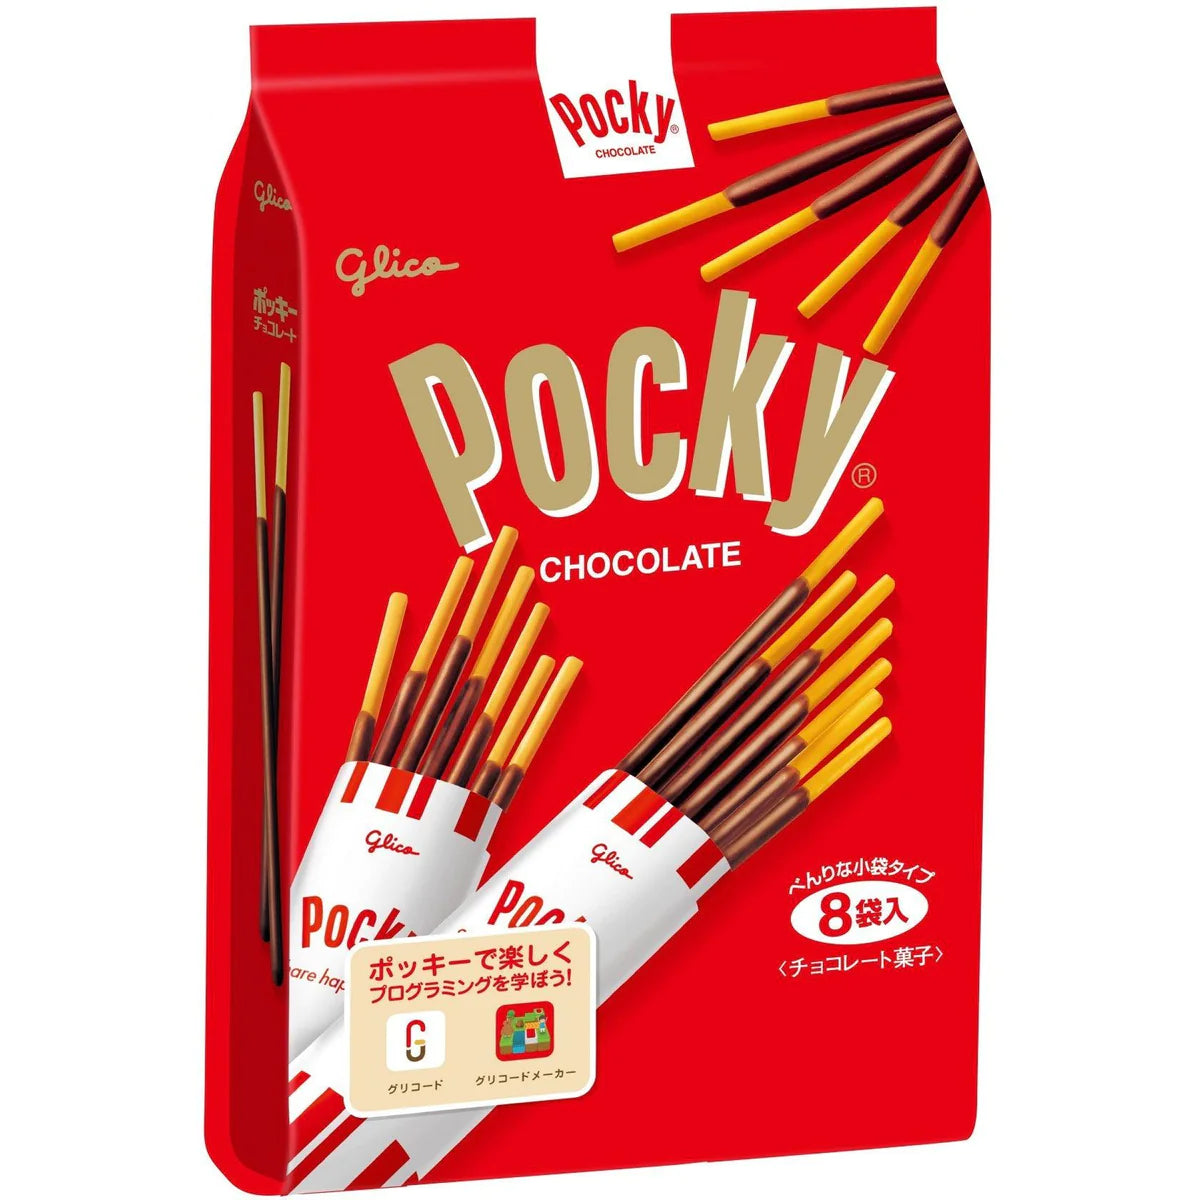 Glico Pocky Chocolate 8-Pack